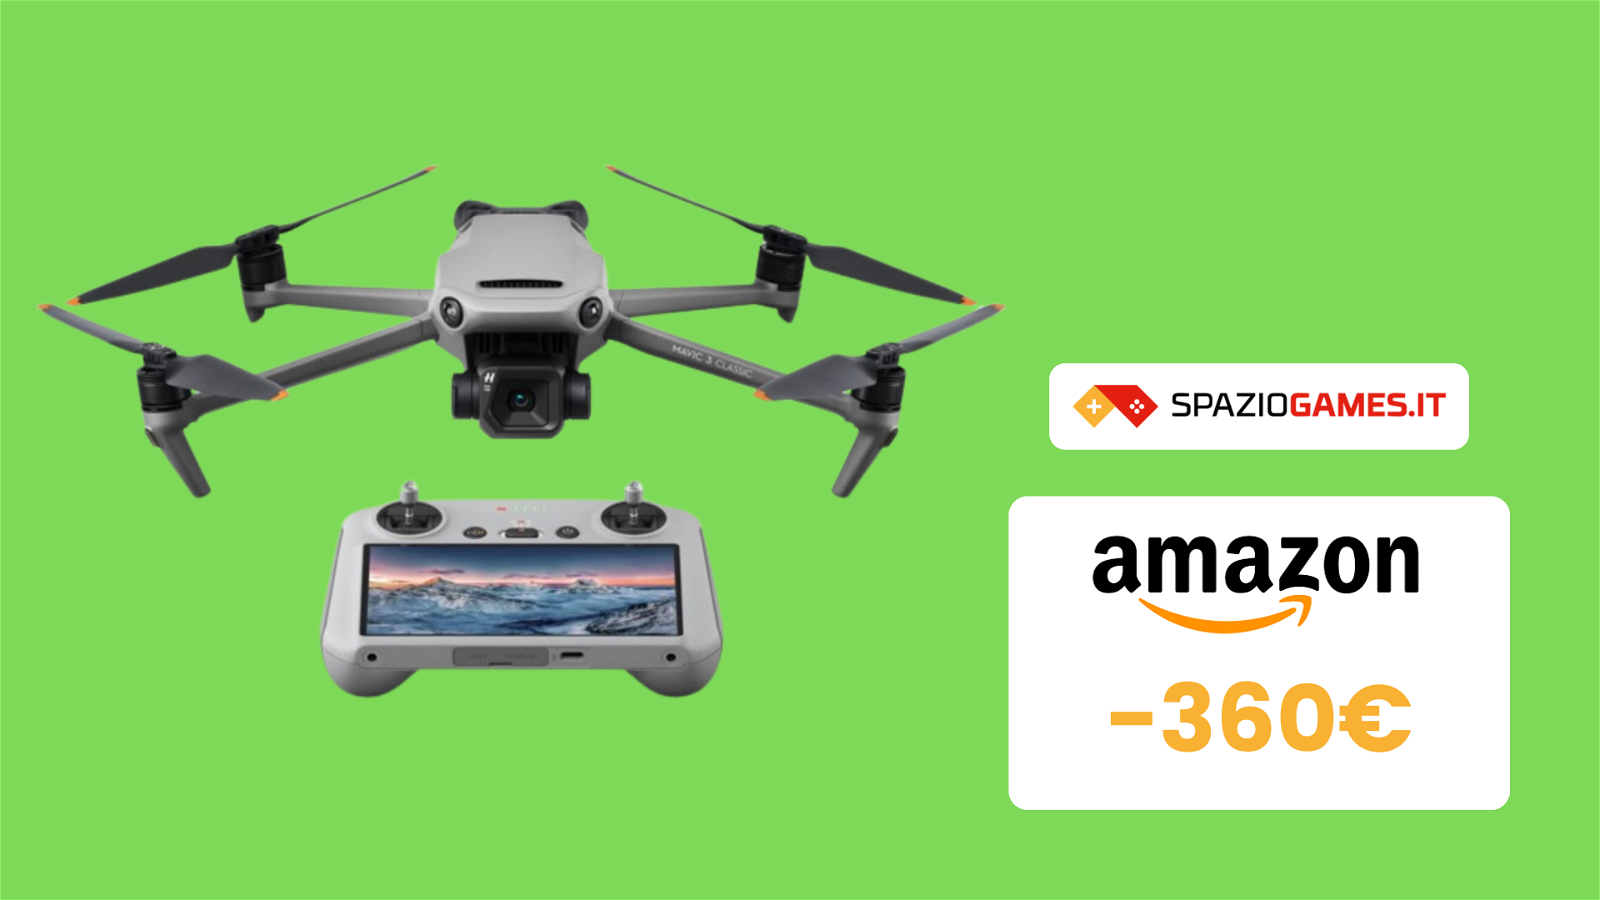 ORA quasi 400€ di sconto su questo OTTIMO drone DJI!